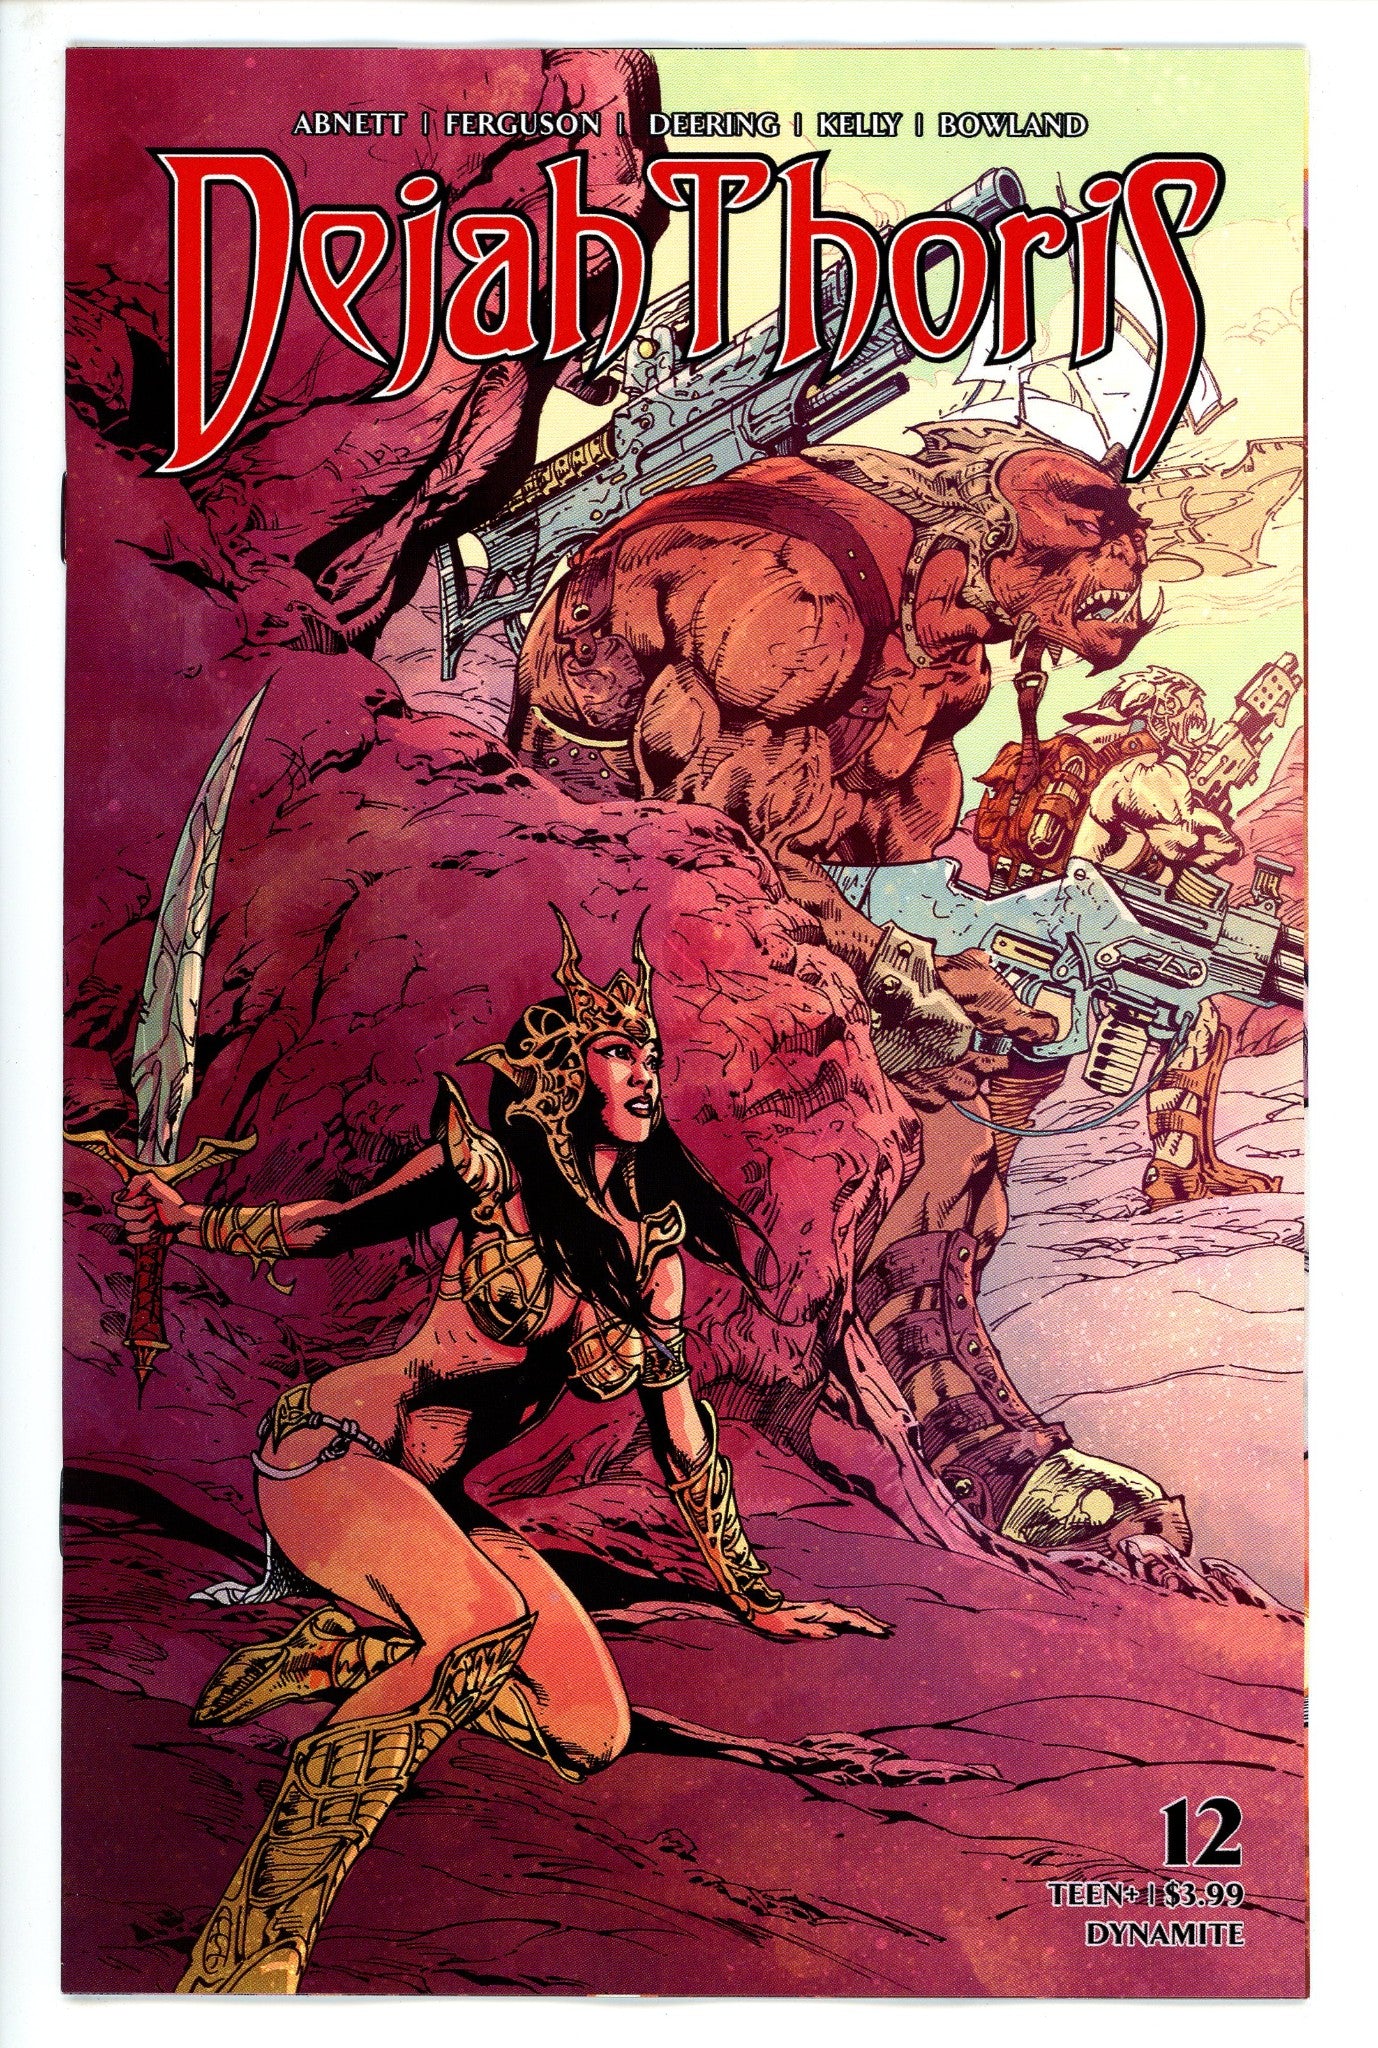 Dejah Thoris Vol 3 12 Castro Variant-CaptCan Comics Inc-CaptCan Comics Inc